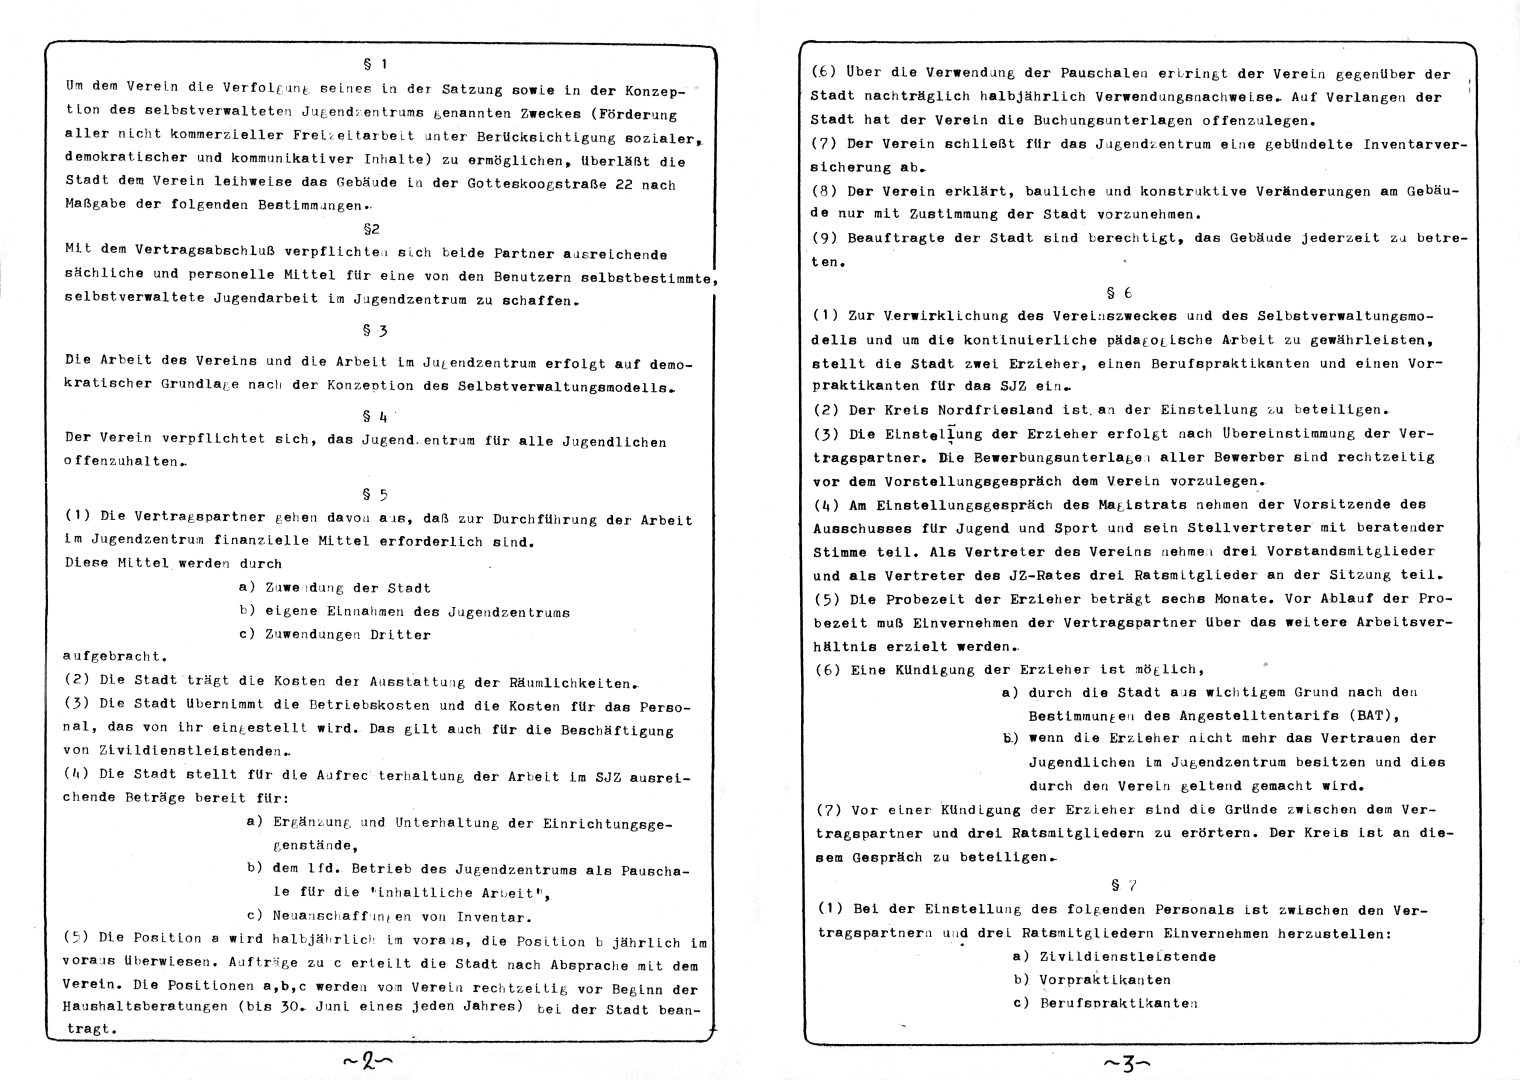 EXTRA - Seite 2 und 3